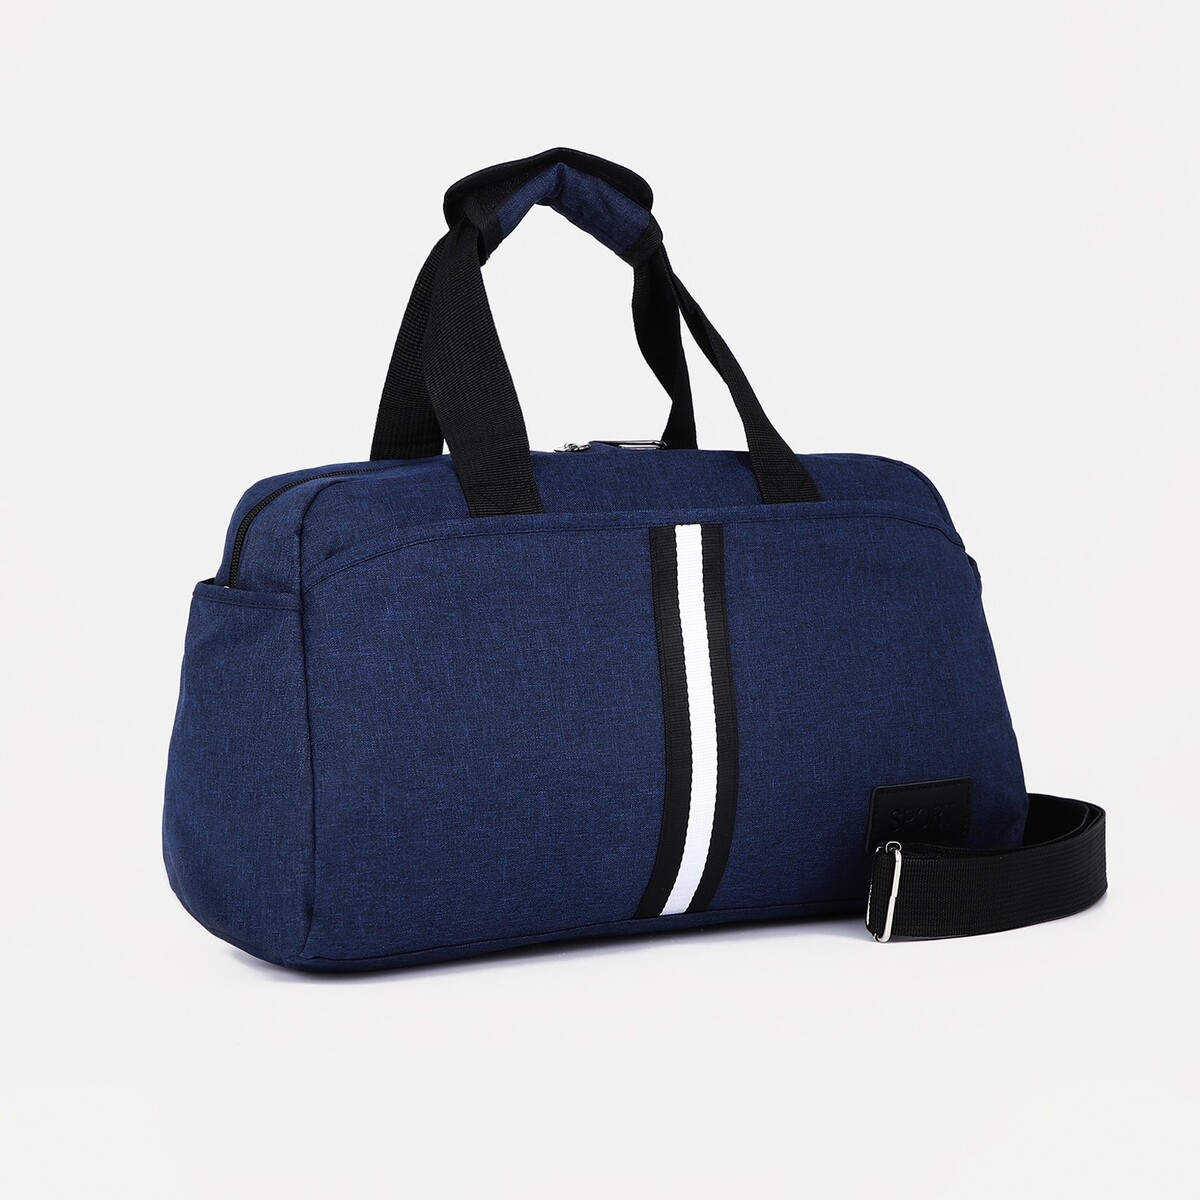 Сумка спортивная на молнии, 3 наружных кармана, длинный ремень, цвет синий сумка спортивная на молнии 2 наружных кармана длинный ремень